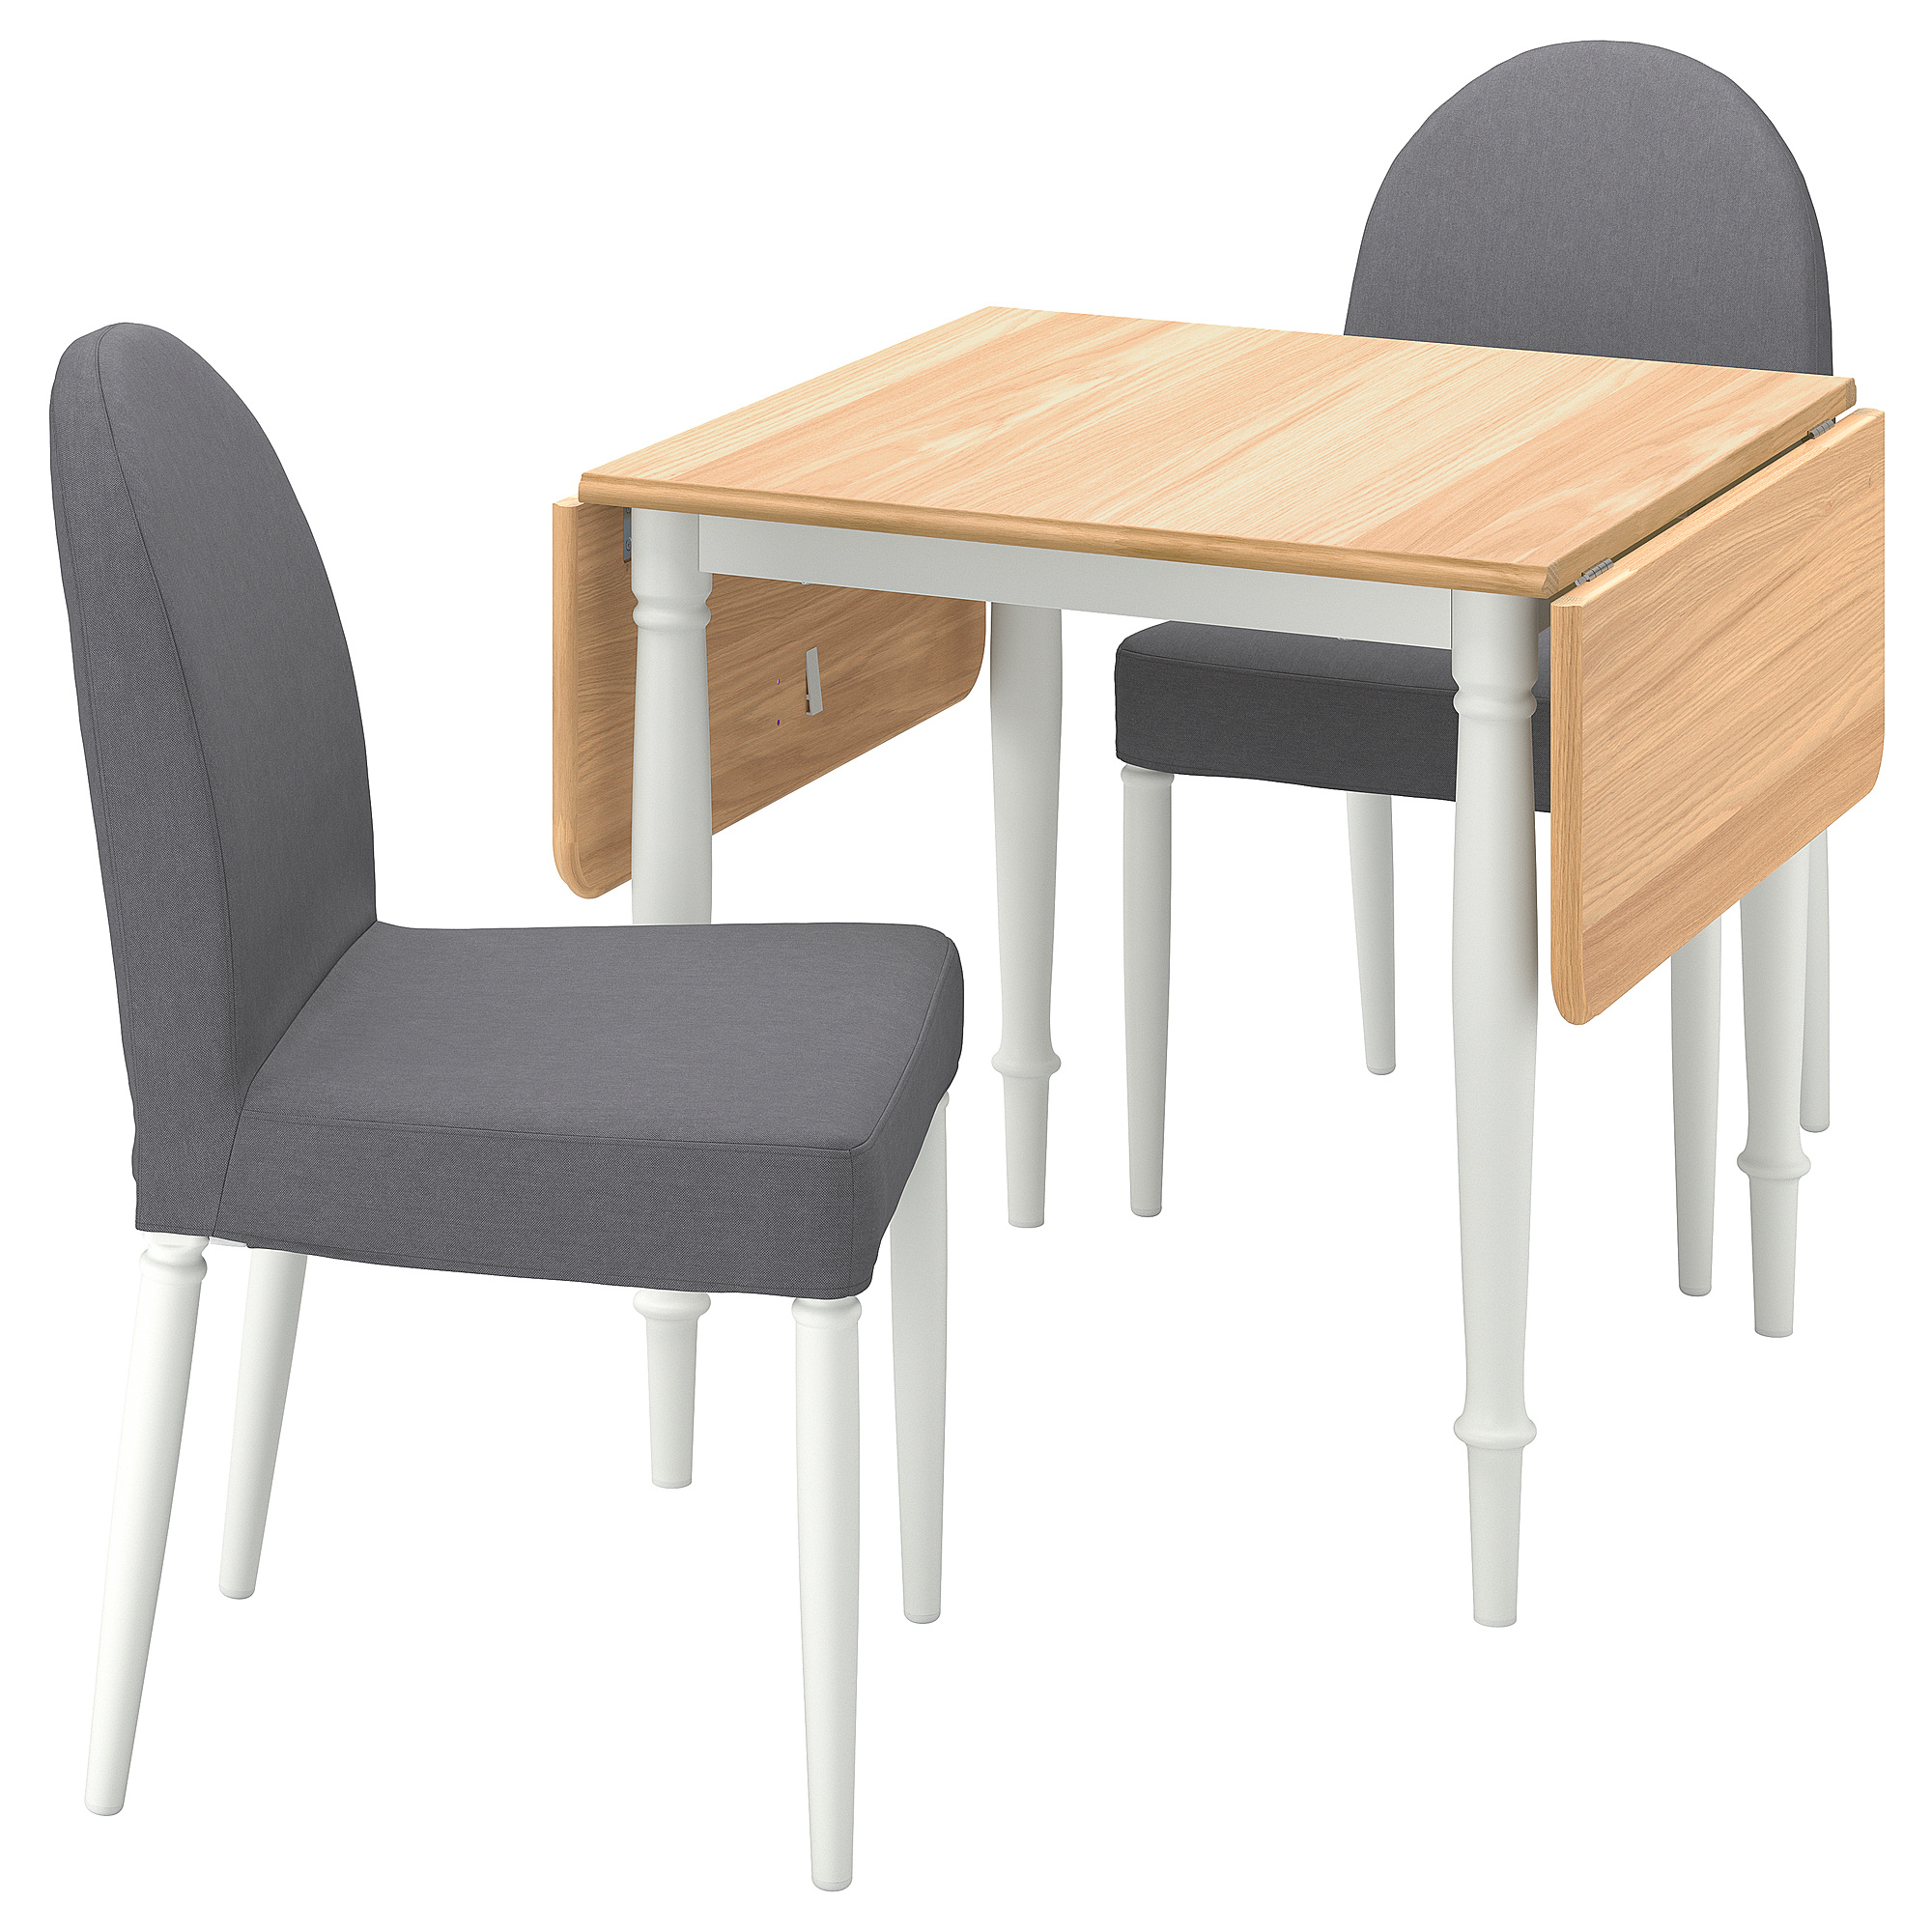 DANDERYD/DANDERYD - 一桌二椅, 實木貼皮, 橡木白色/Vissle 灰色| IKEA 